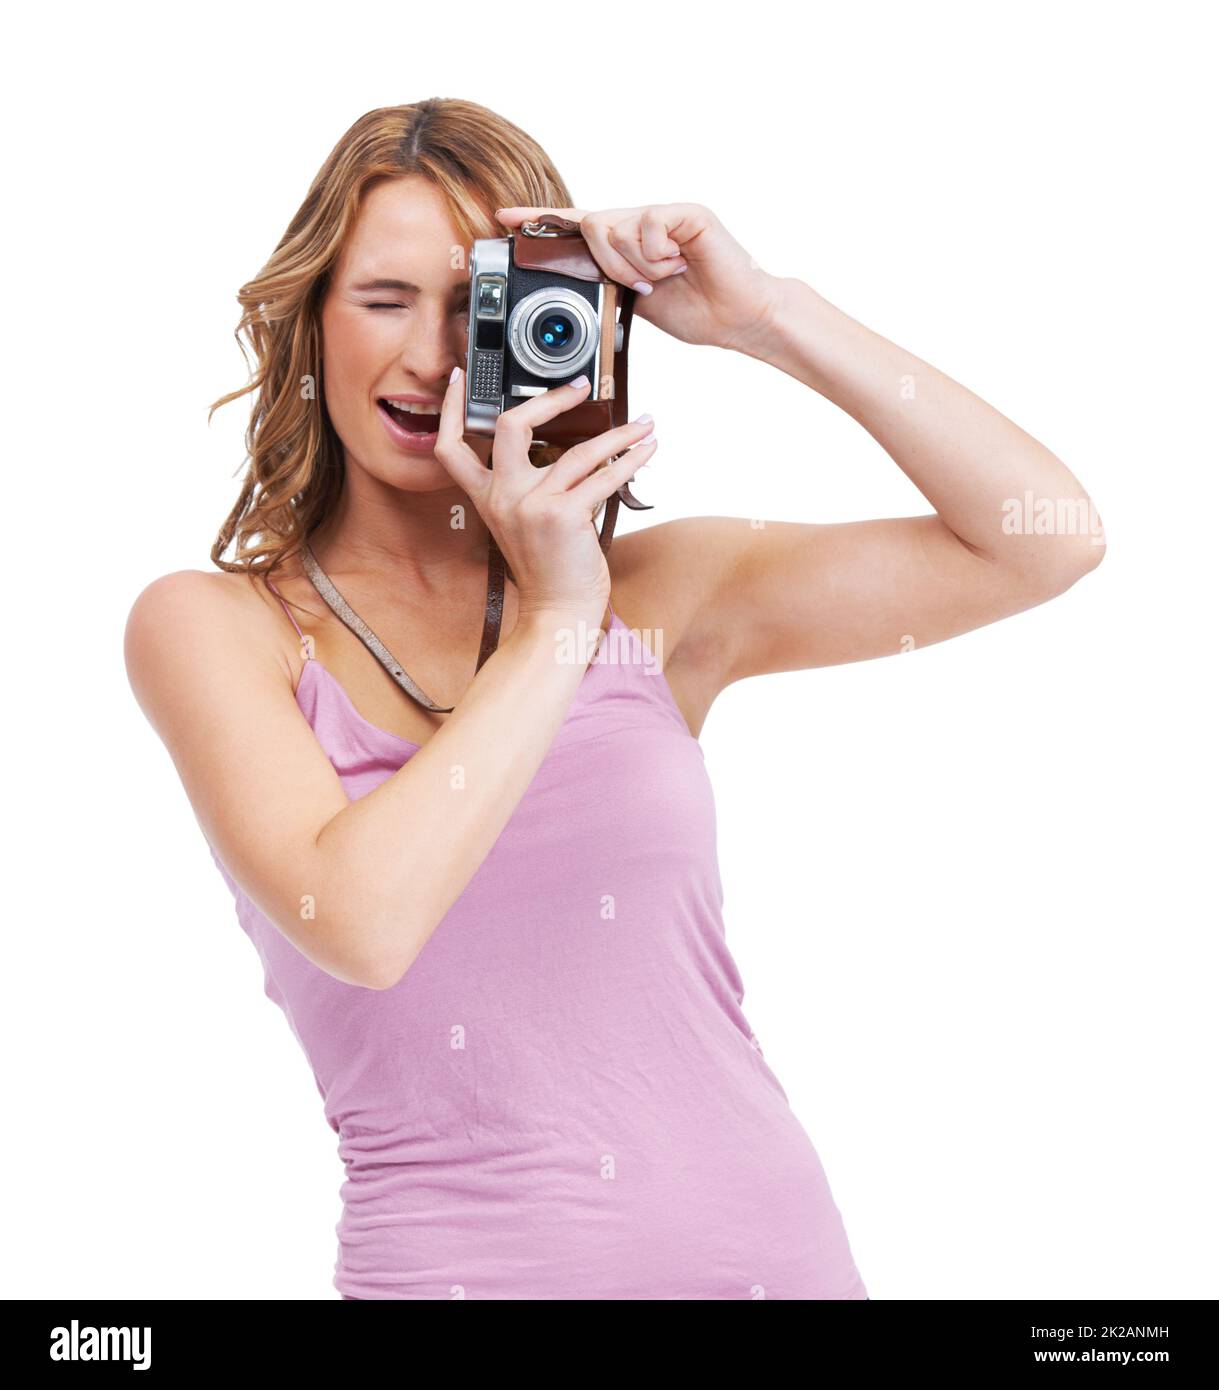 Vous êtes si photogénique. Photo en studio d'une jeune femme prenant une photo avec un appareil photo d'époque. Banque D'Images